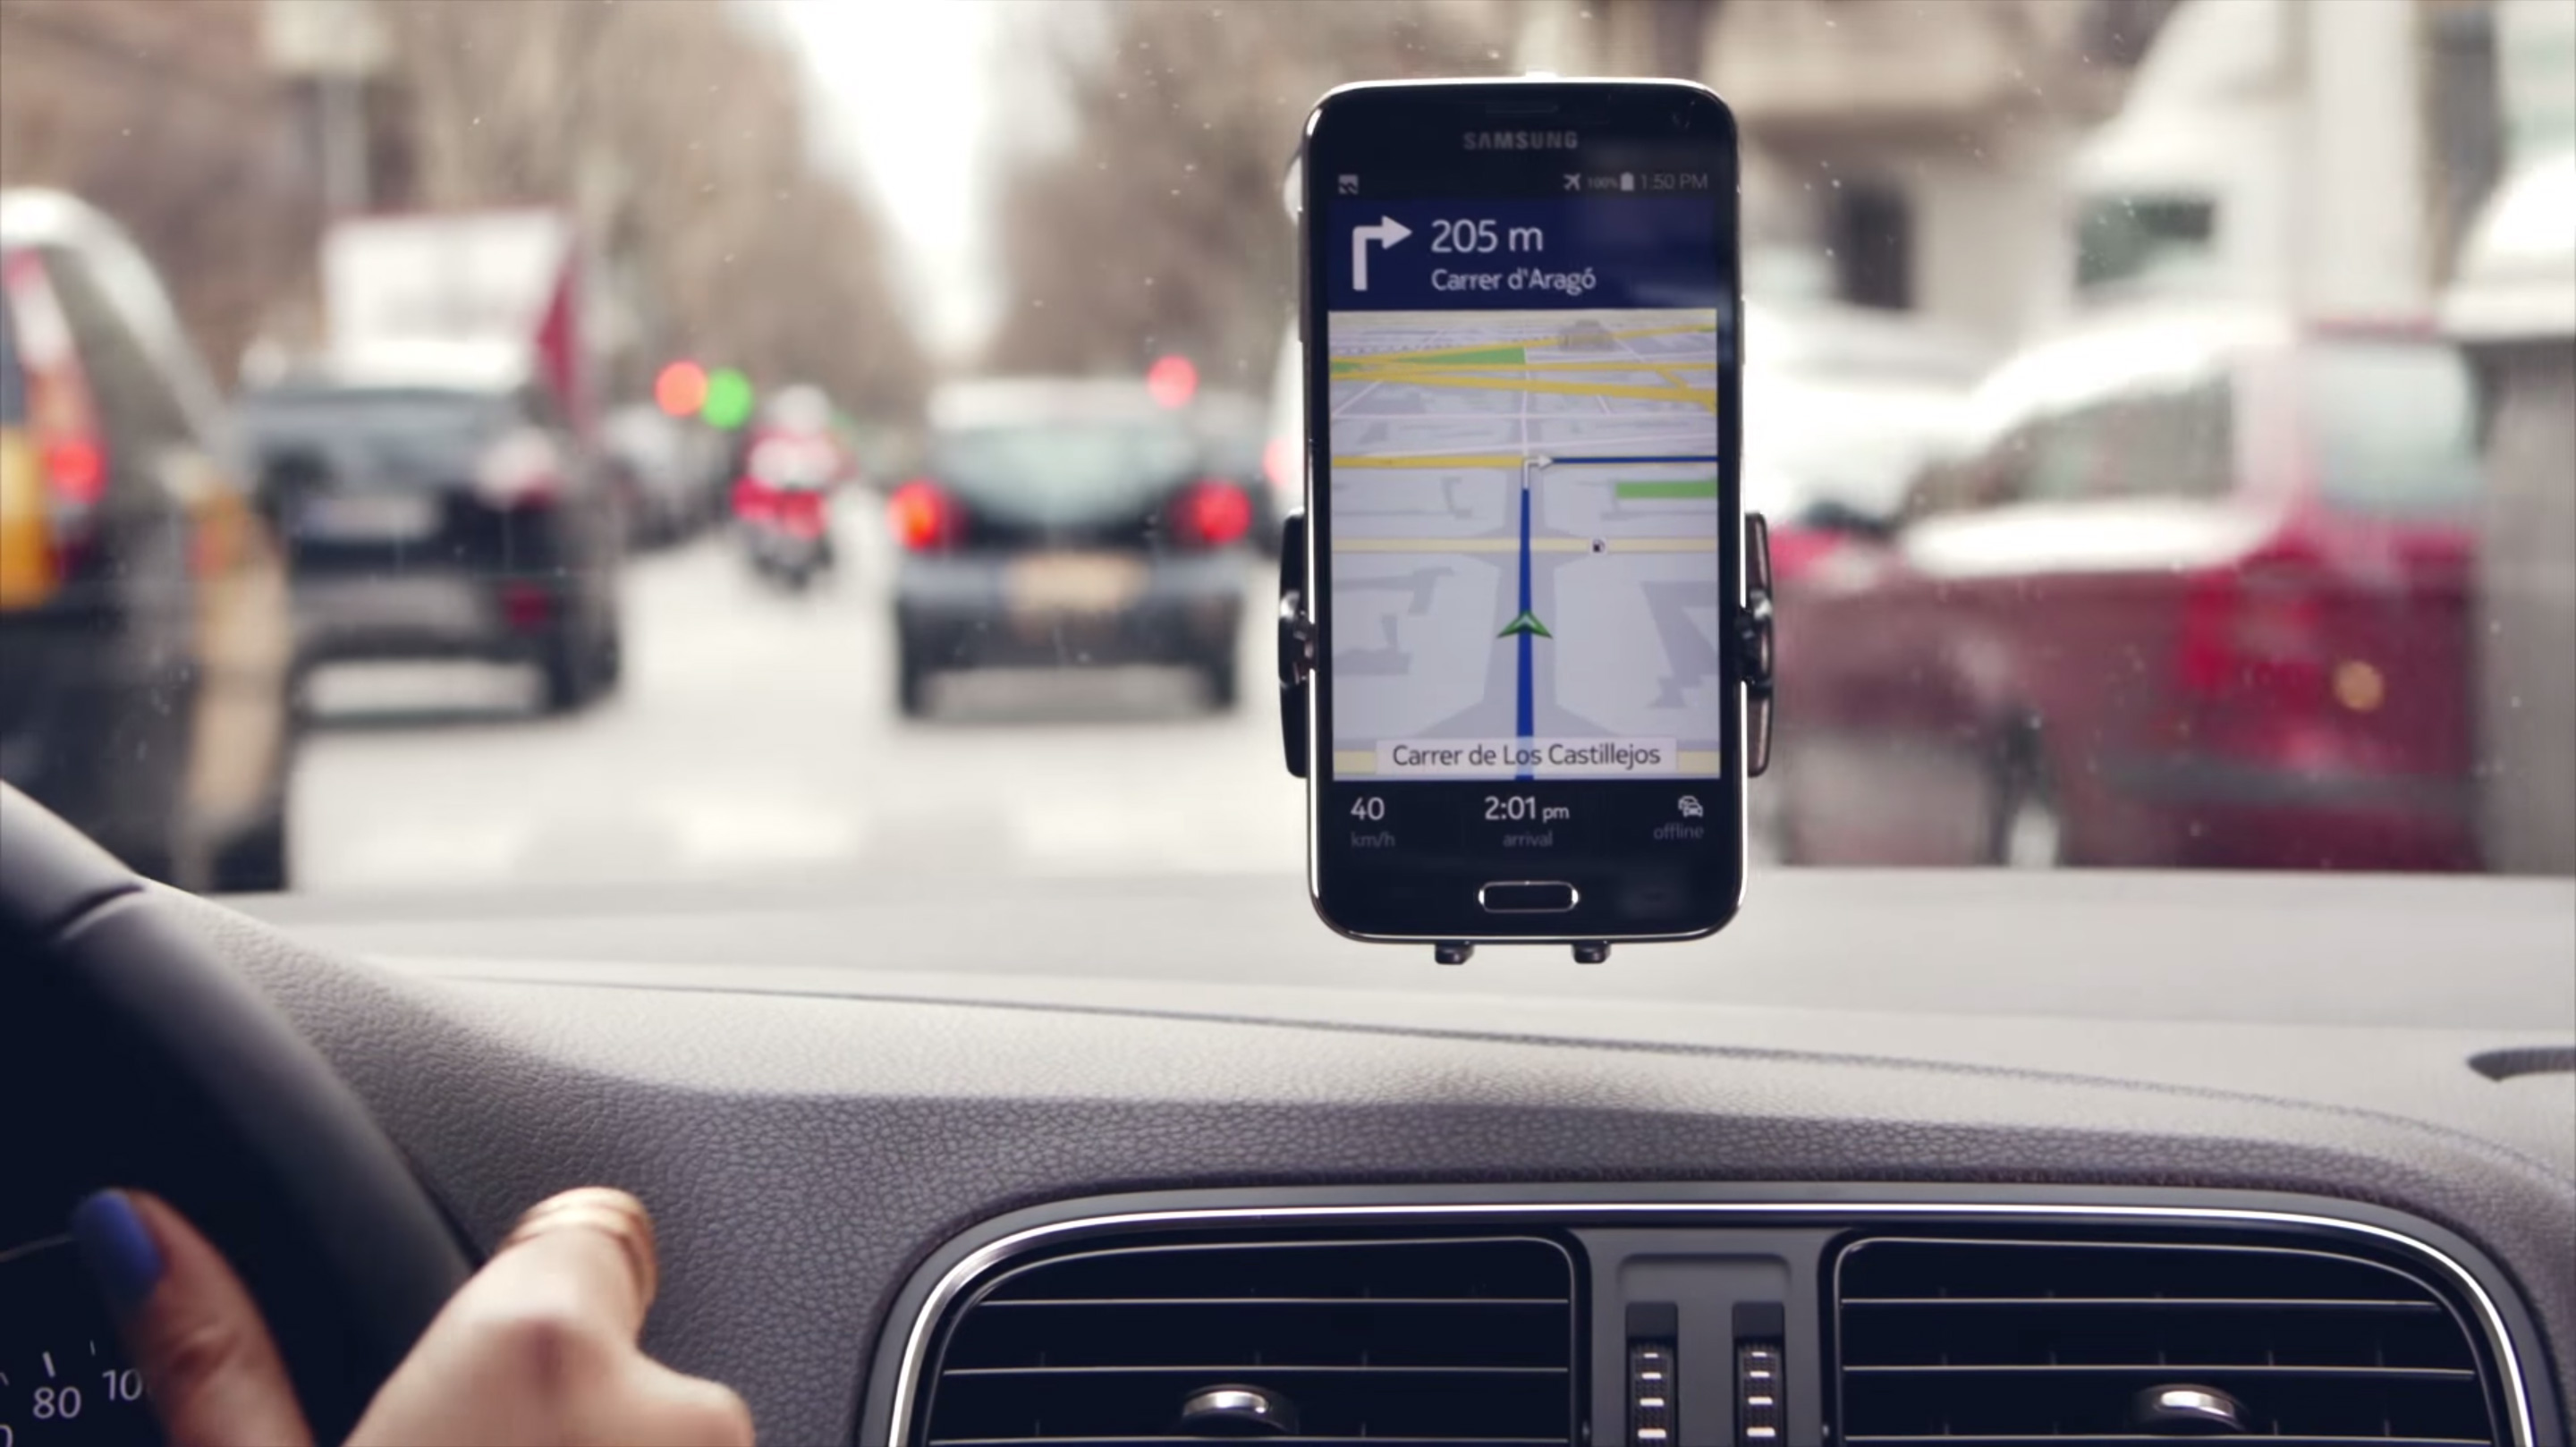 Oi Mapas: GPS com navegação offline gratuito para Android